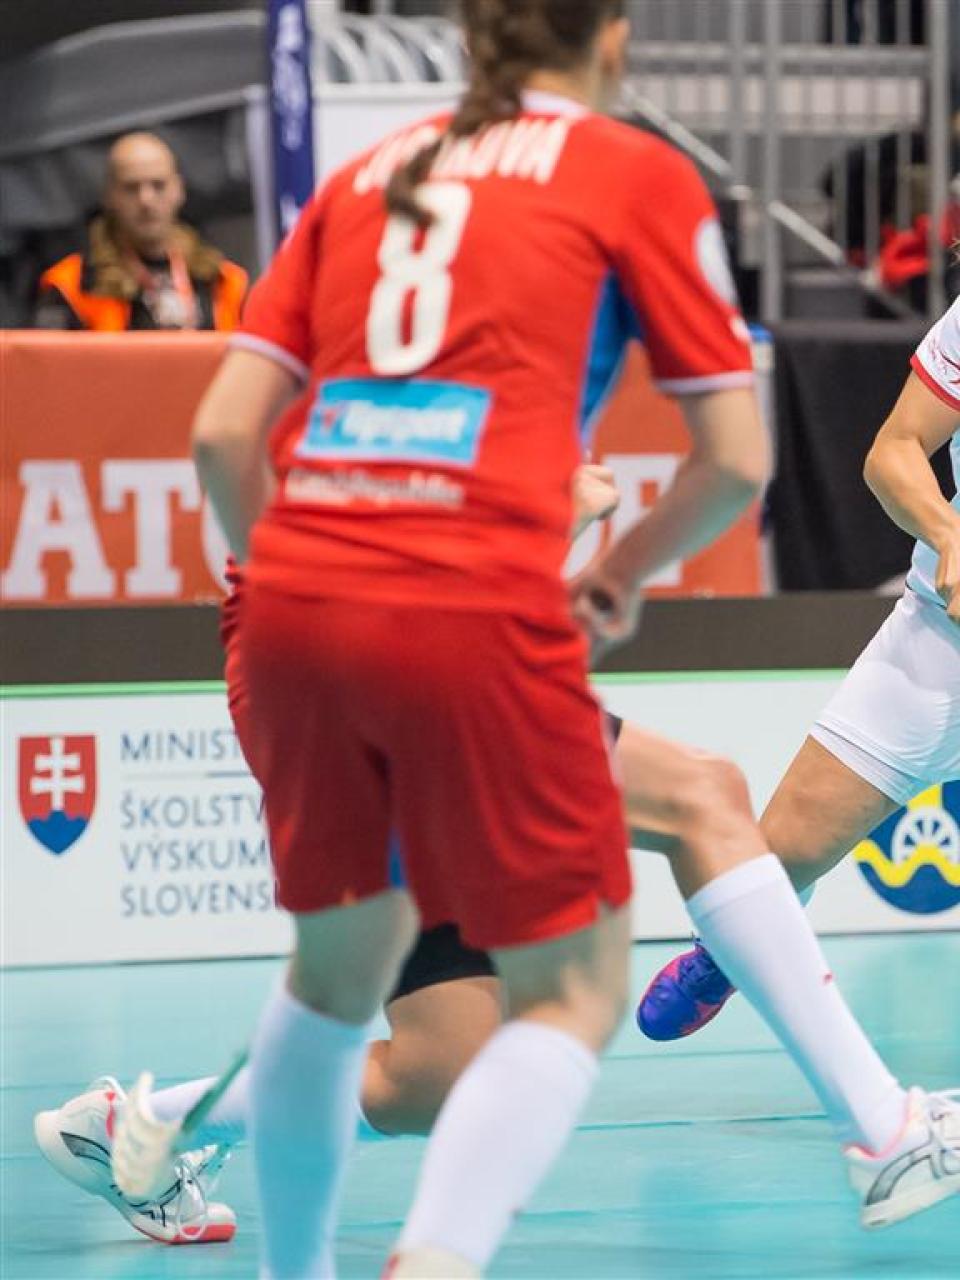 Il Campionato mondiale femminile si disputerà nel 2019 a Neuchâtel.